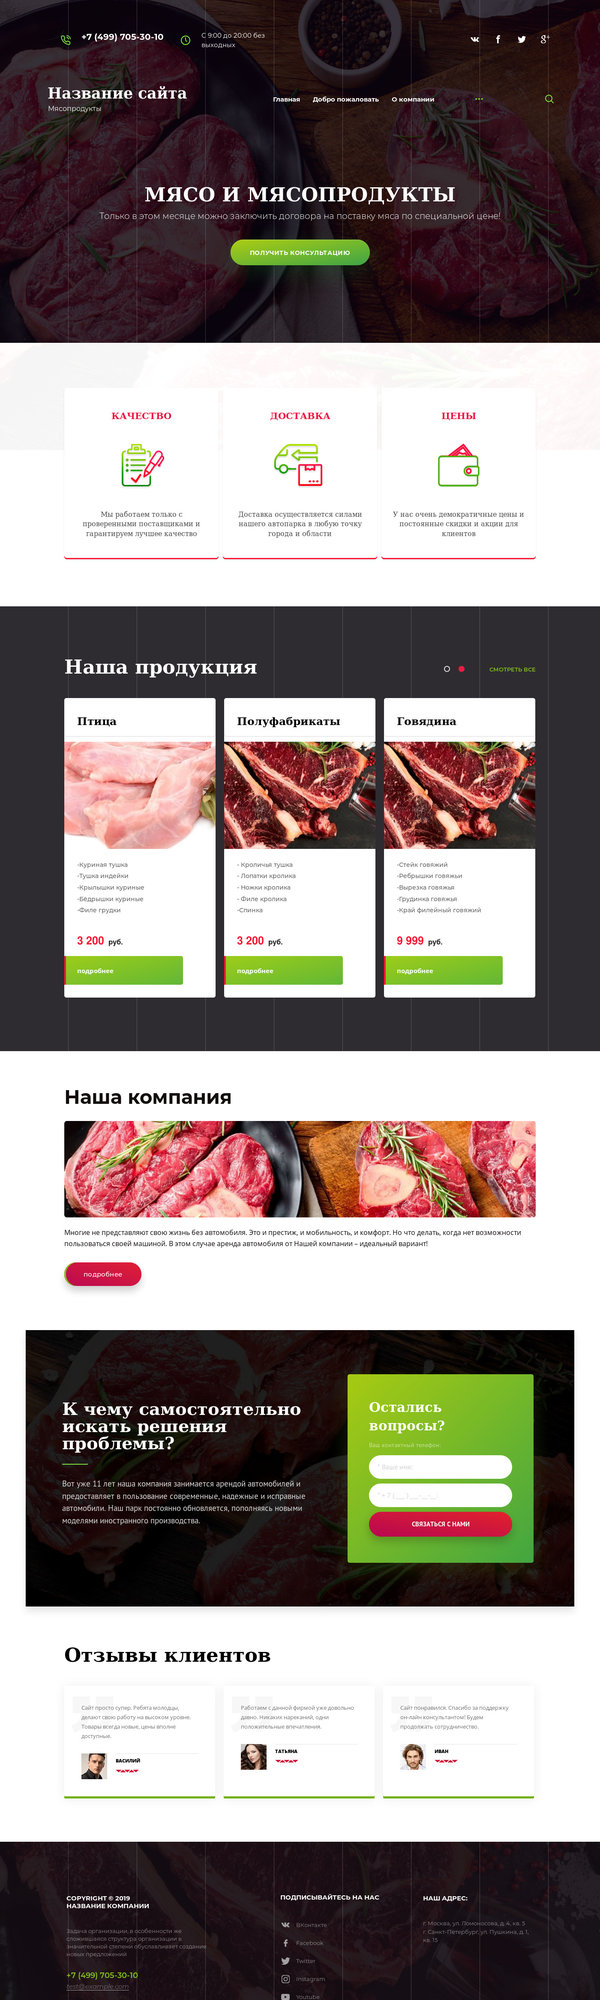 Готовый Сайт-Бизнес № 2556636 - Мясопродукты (Десктопная версия)